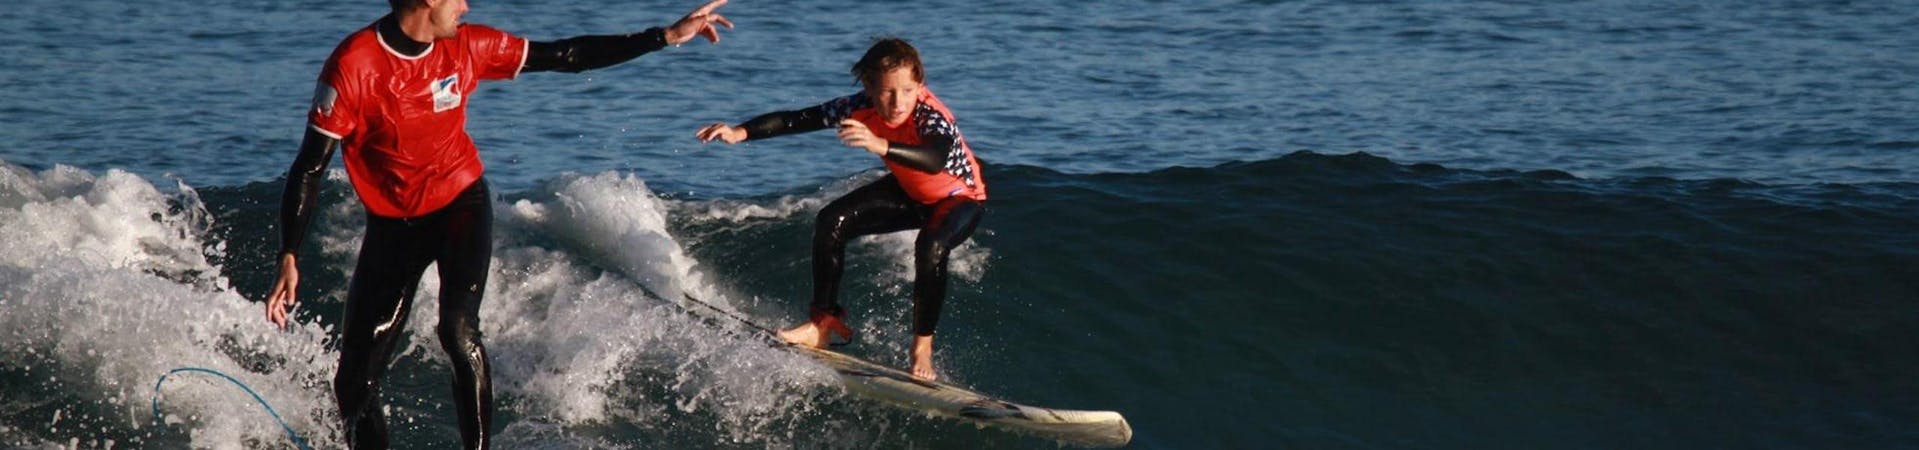 Un enfant surfe durant le Cours de Surf - Plage d'Hendaye - Intermédiaire avec Gold Coast Hendaye.